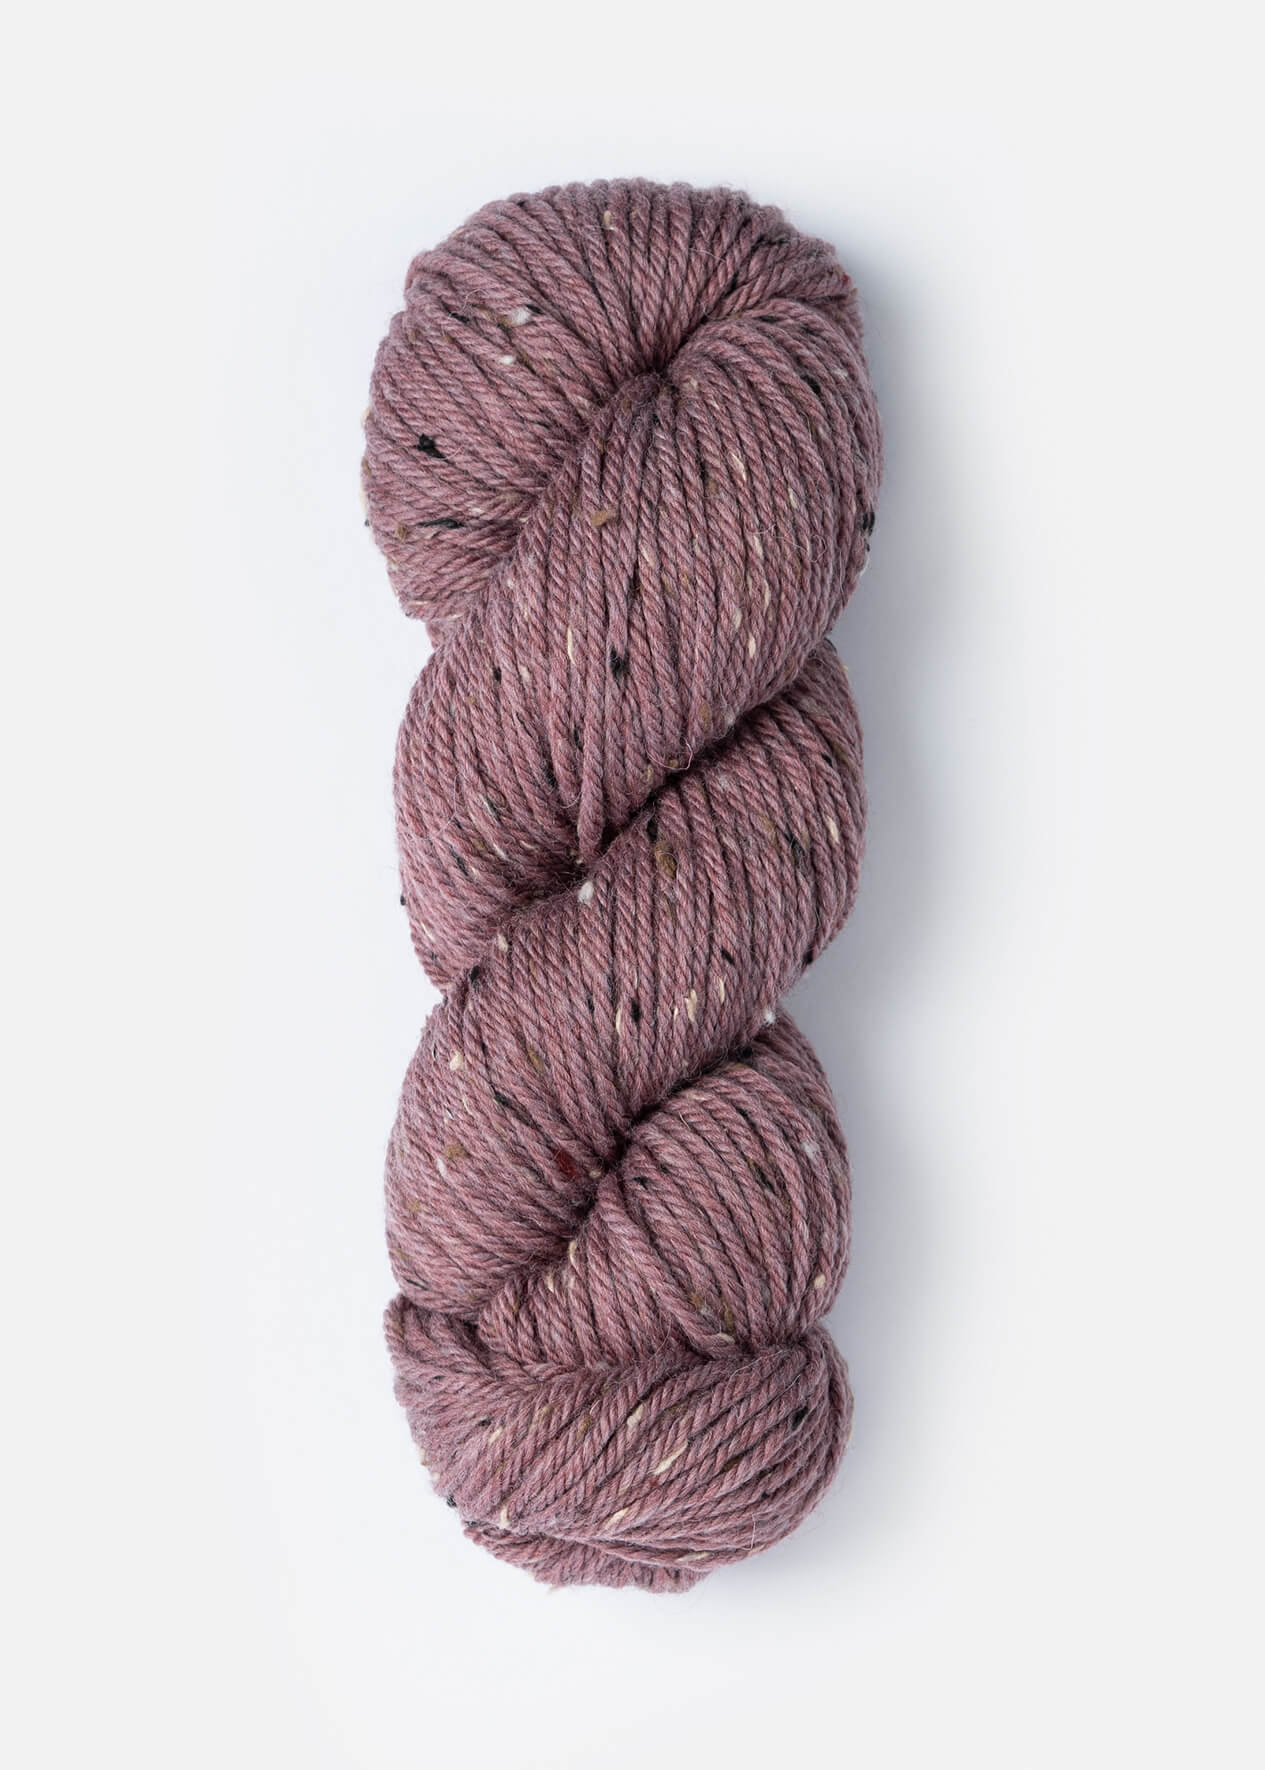 Blue Sky Fibers - Woolstok Tweed - Sage Rose